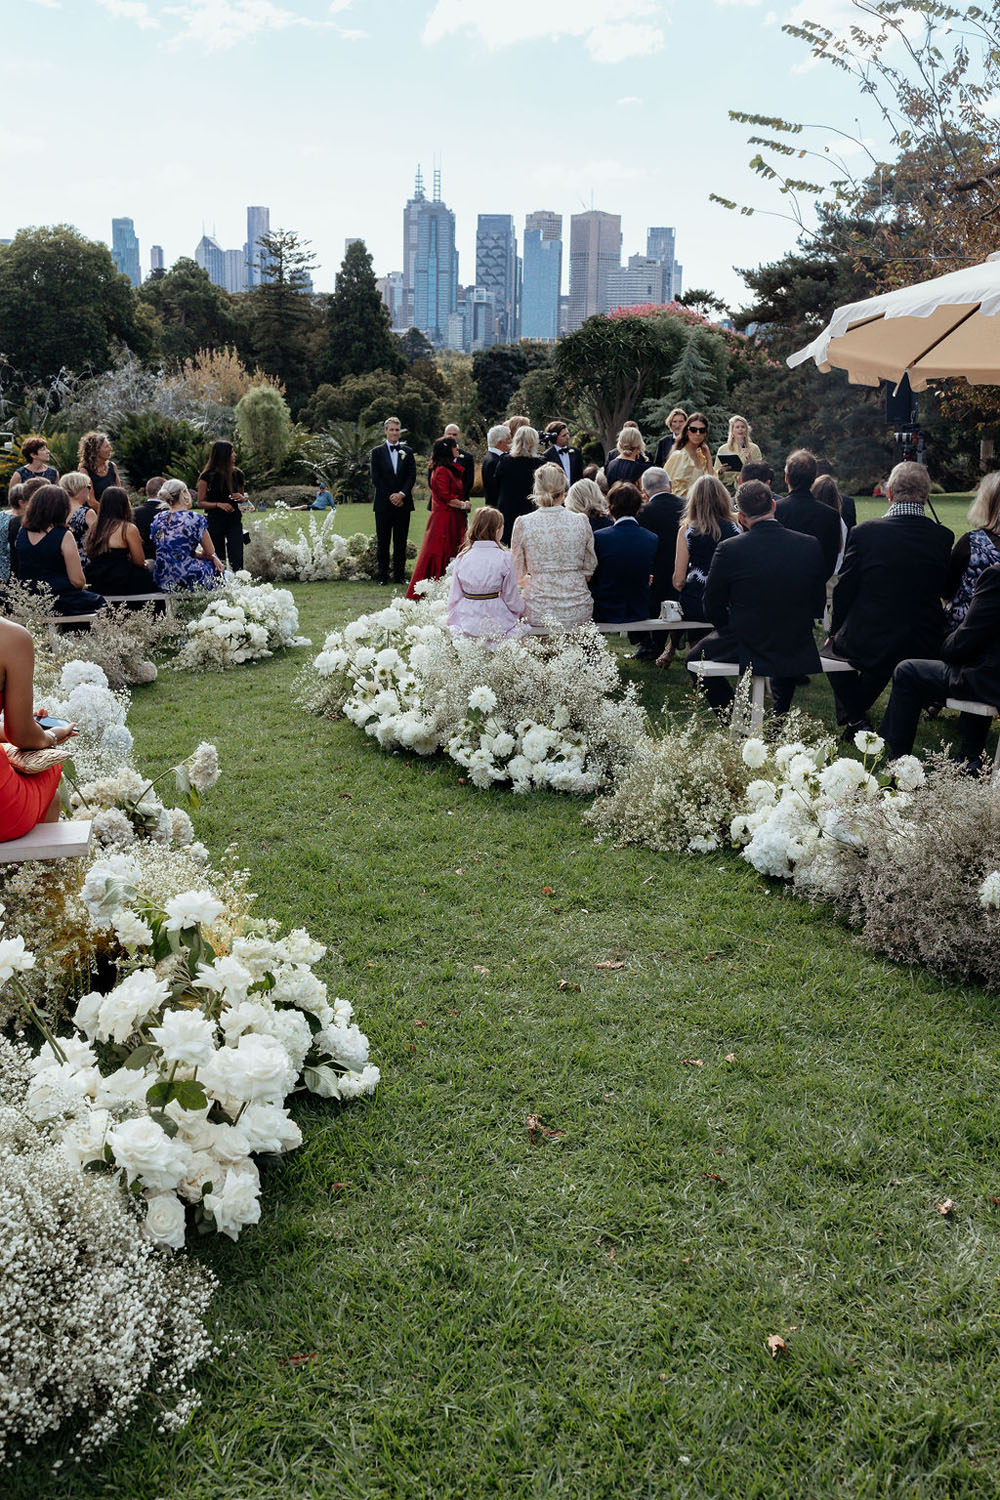 La clásica boda de la empresaria australiana Gretta van Riel